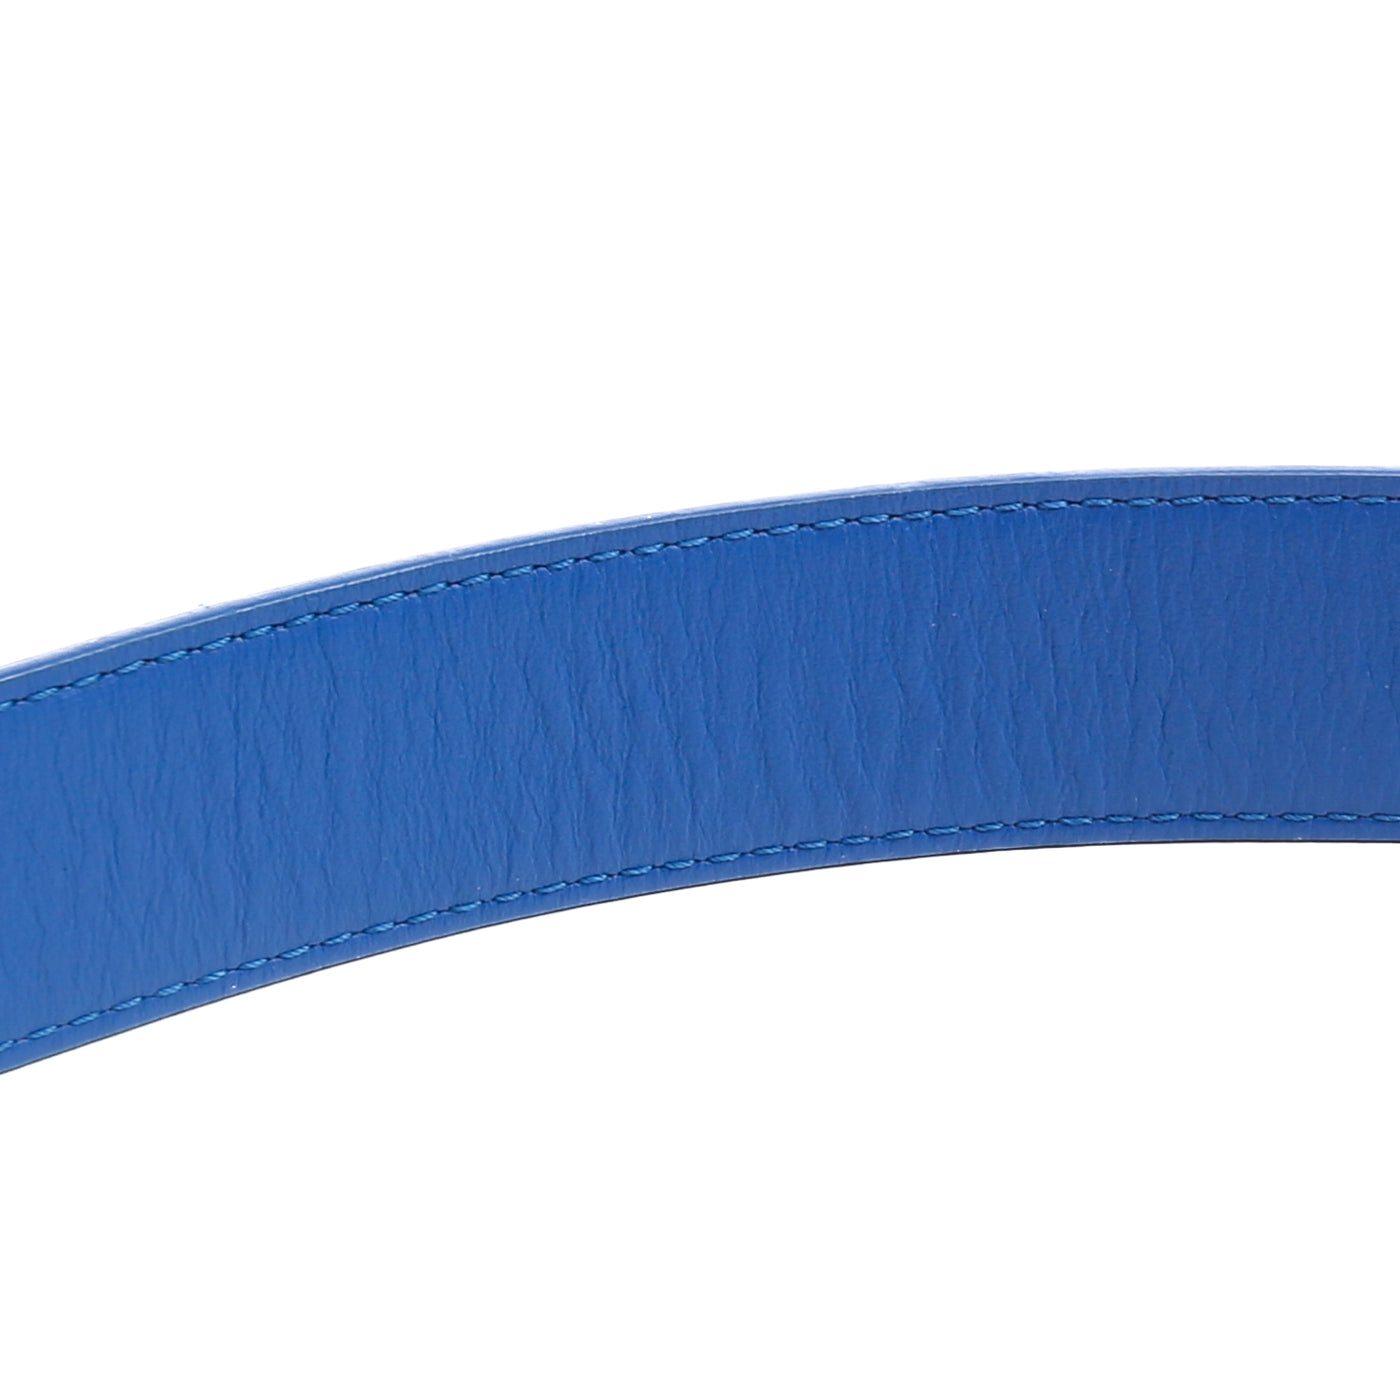 LOUIS VUITTON LV Initials 30MM Reversible Belt - Cobalt Blue